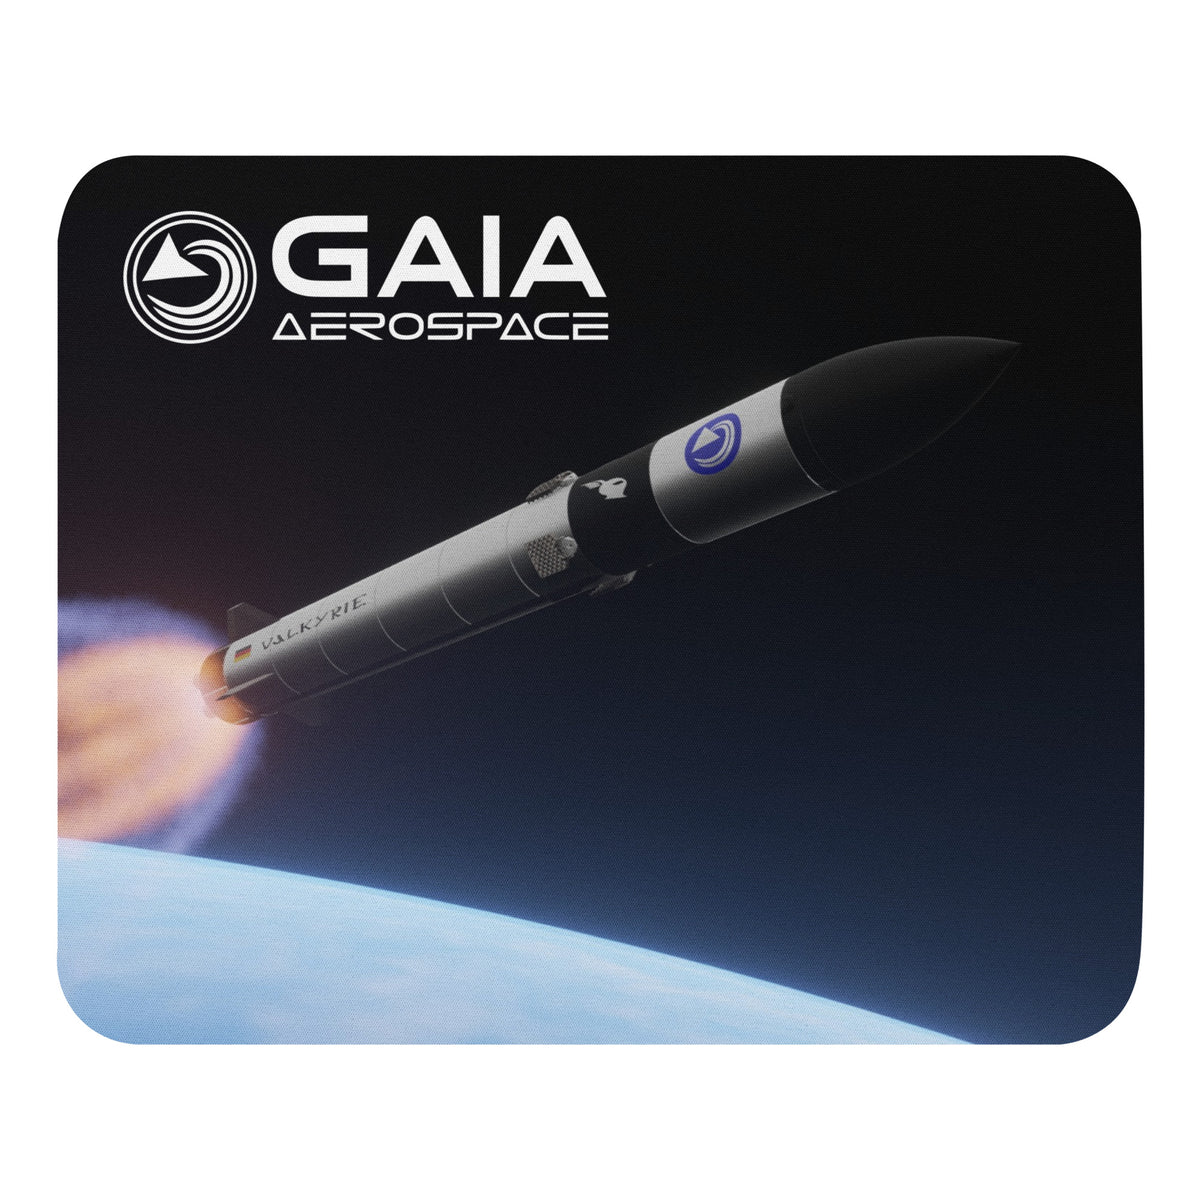 GAIA Aerospace - Mauspad